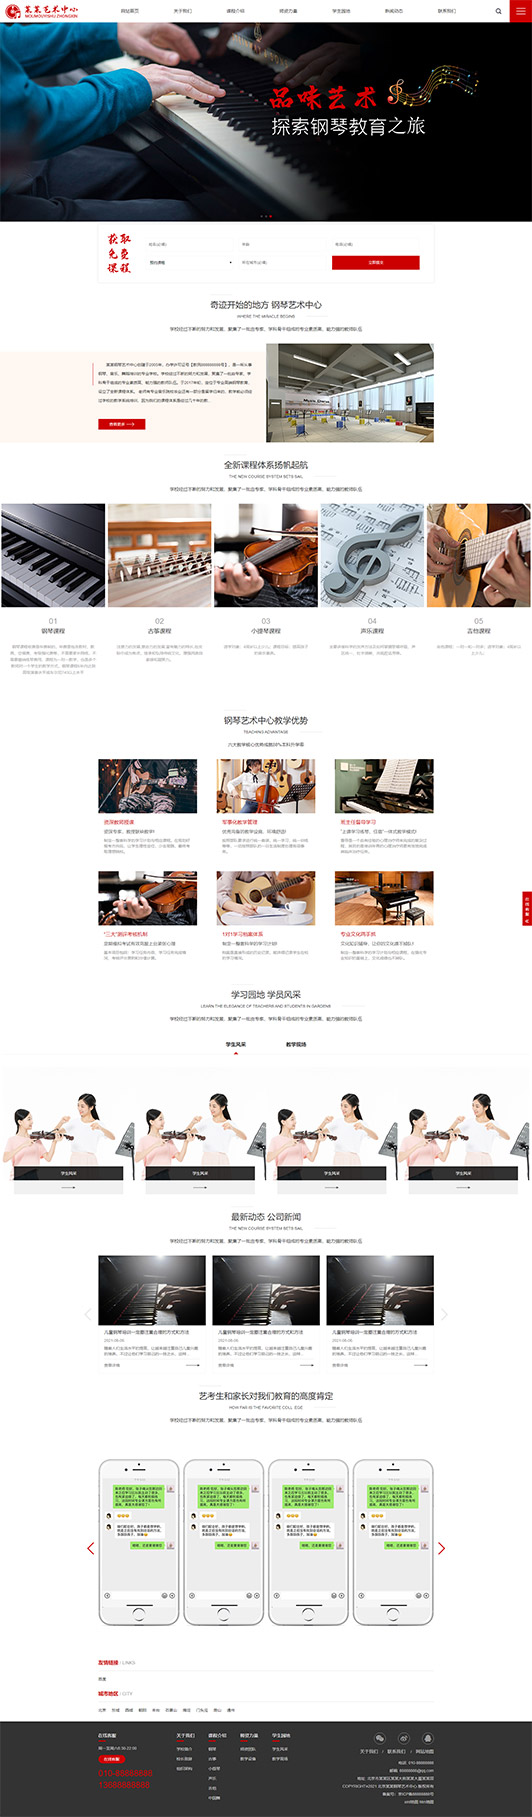 汕尾钢琴艺术培训公司响应式企业网站